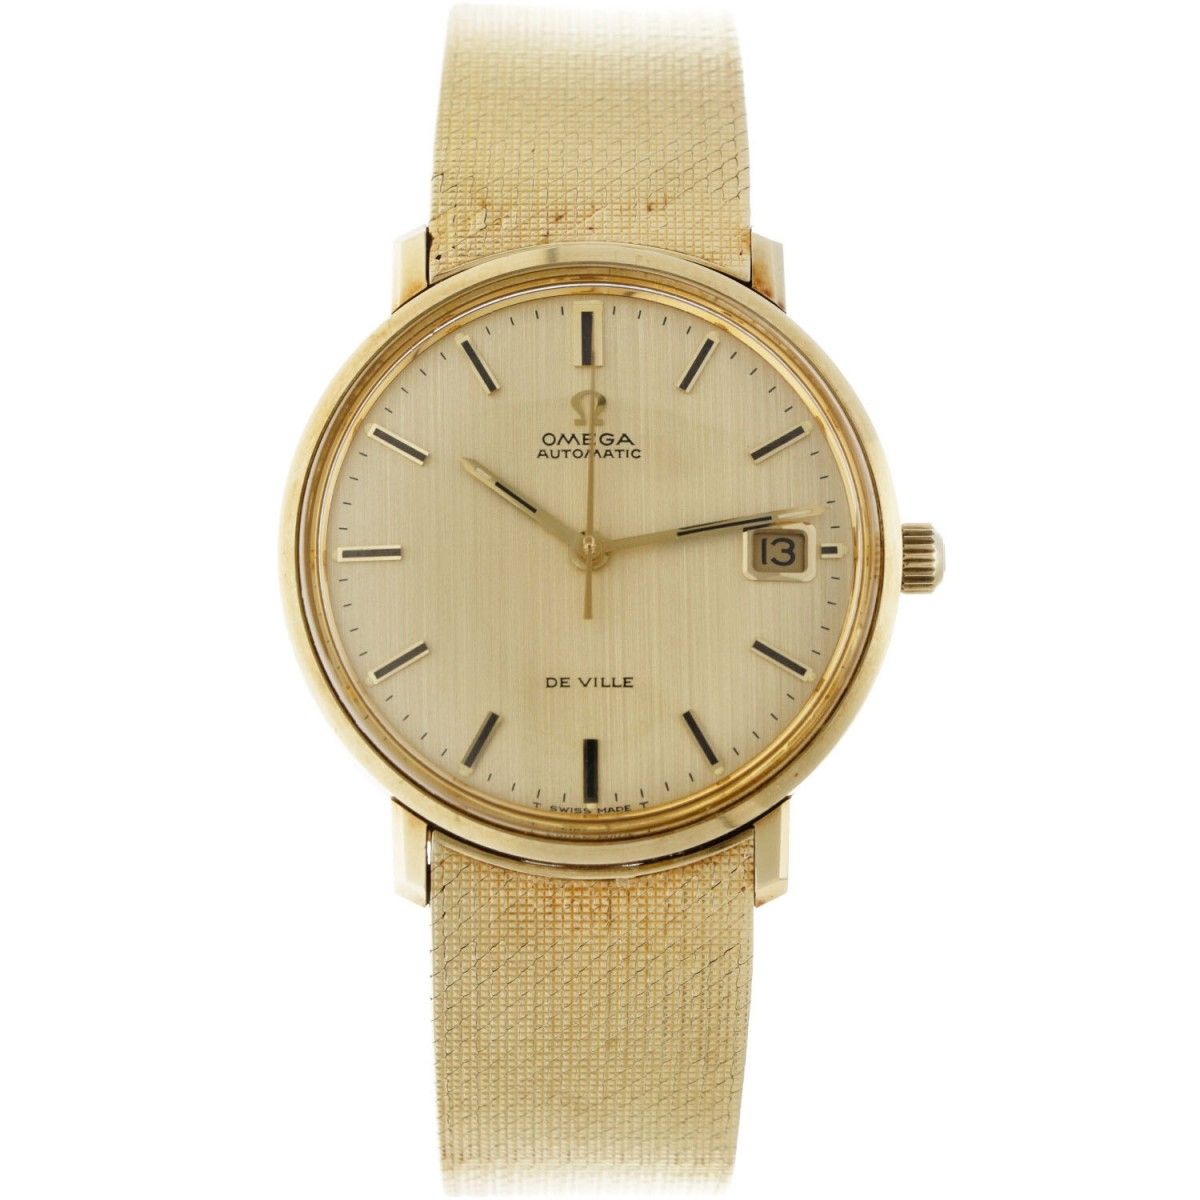 Omega de Ville 166.033 - Men's watch - apprx. 1974. Cassa: oro giallo (14 kt.) -&hellip;